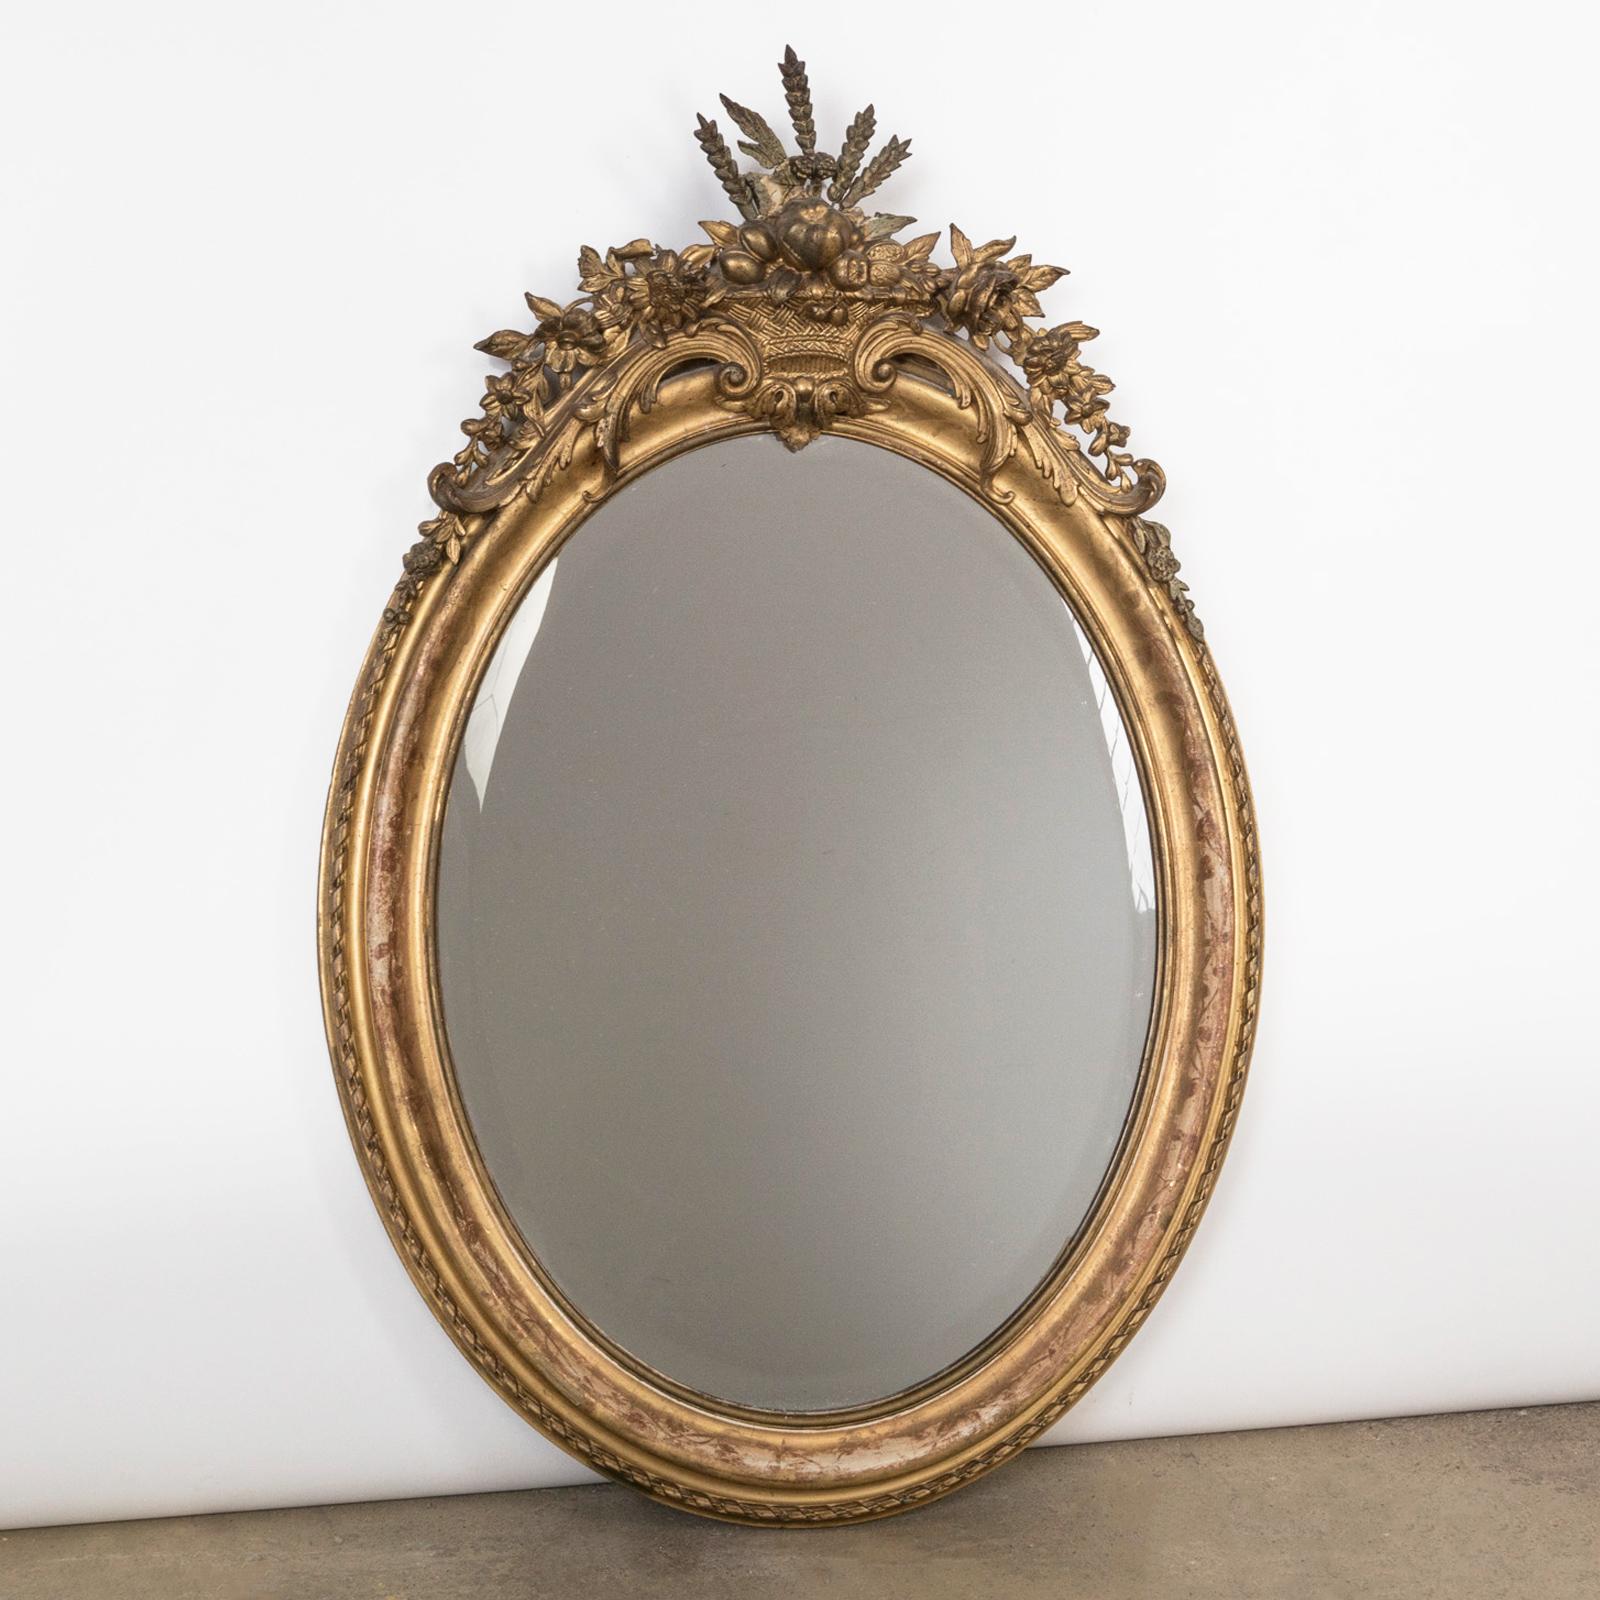 Ancien miroir ovale français du 19ème siècle, doré à la feuille d'or, avec une crête en forme de panier, de fruits et de fleurs.

Un beau miroir ovale ancien qui a été fabriqué en France, vers 1880.

Le cadre du miroir est décoré d'un élégant